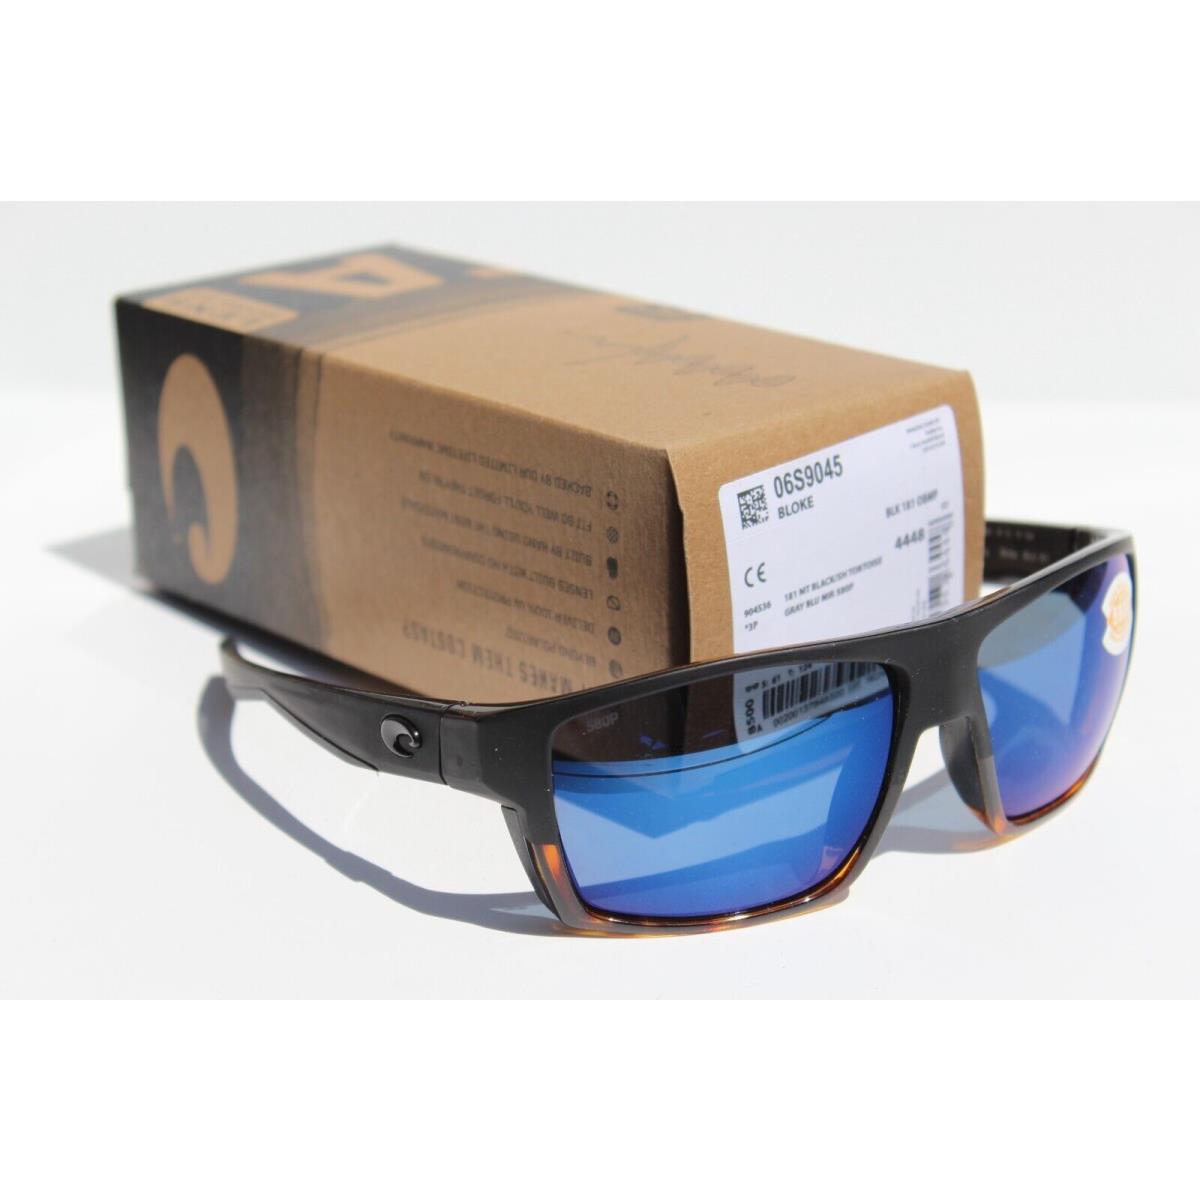 Costa Del Mar sunglasses  - Black Tortoise Frame, Blue Lens 4